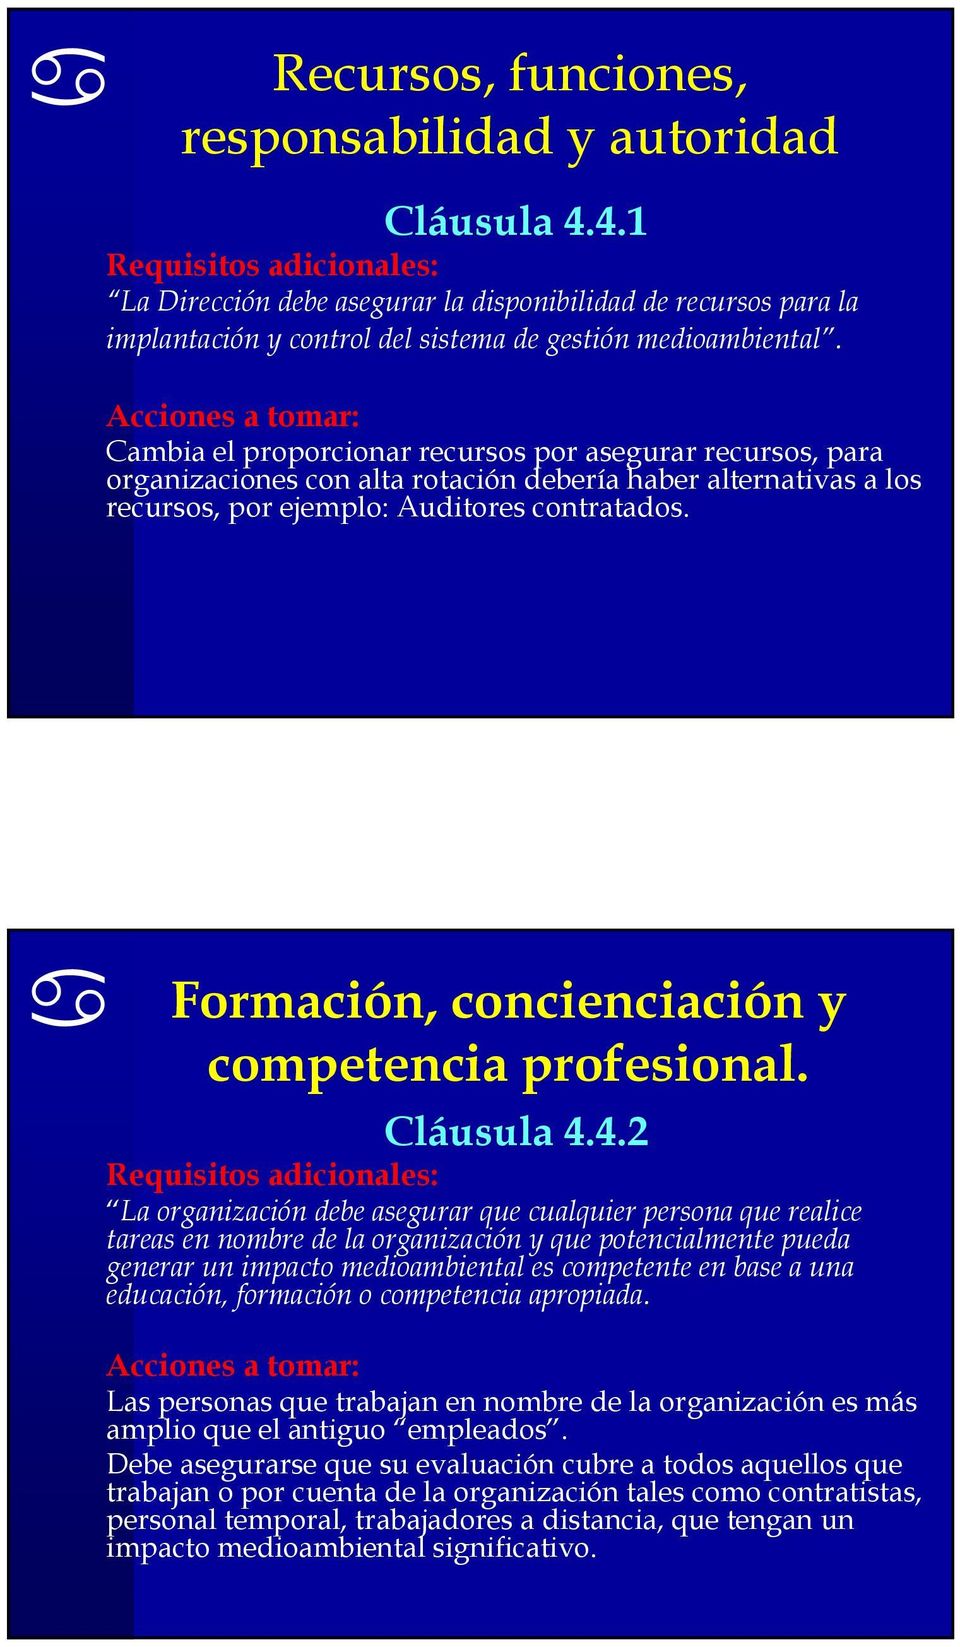 Formación, concienciación y competencia profesional. Cláusula 4.